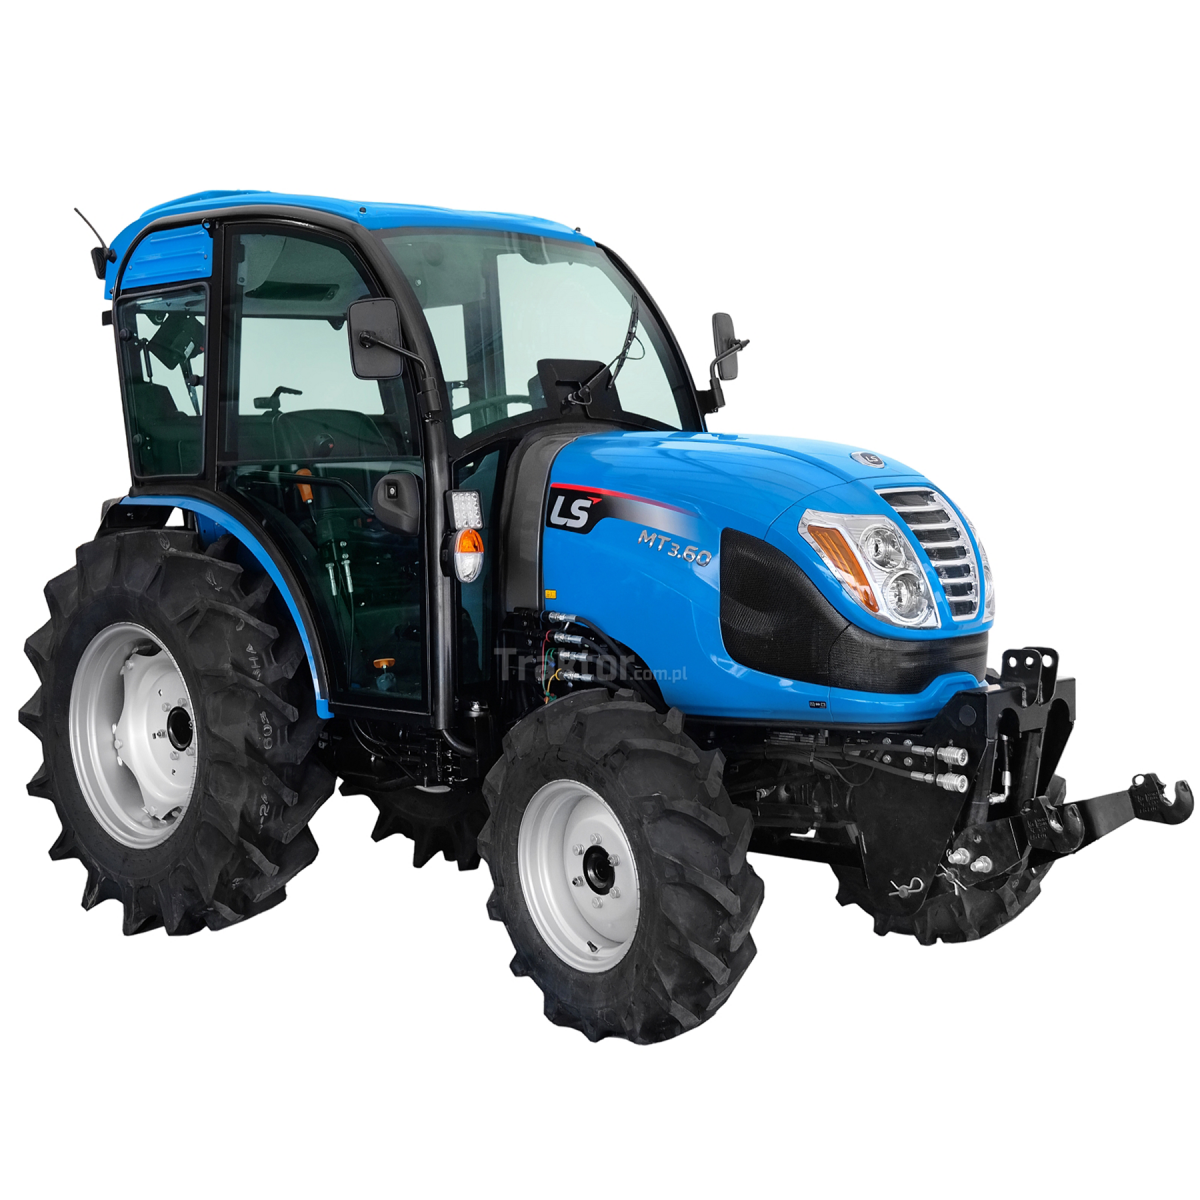 LS Traktor MT3.60 MEC 4x4 - 57 HP / CAB s klimatizací + přední tříbodový závěs Premium 4FARMER